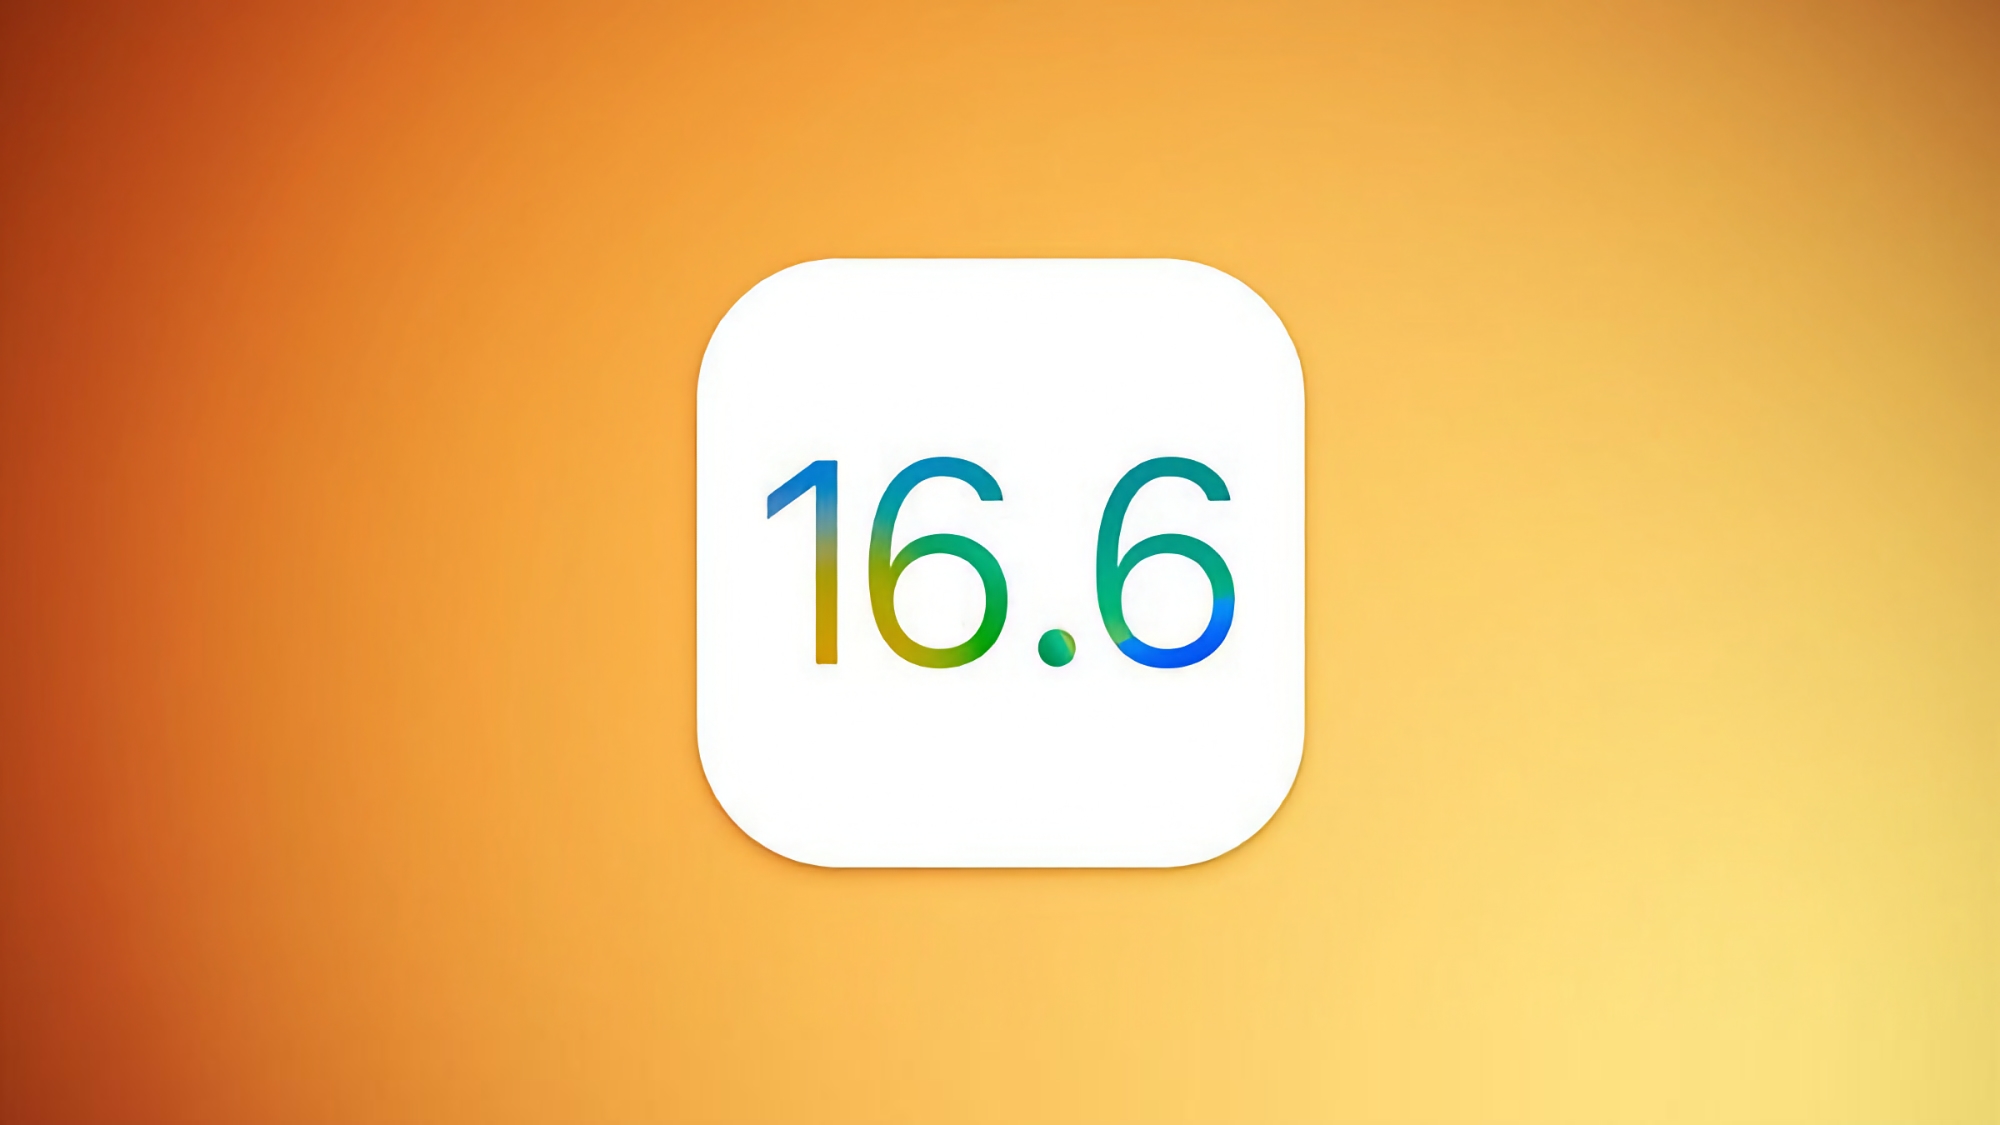 De derde bètaversie van iOS 16.6 voor iPhone-gebruikers is uitgebracht